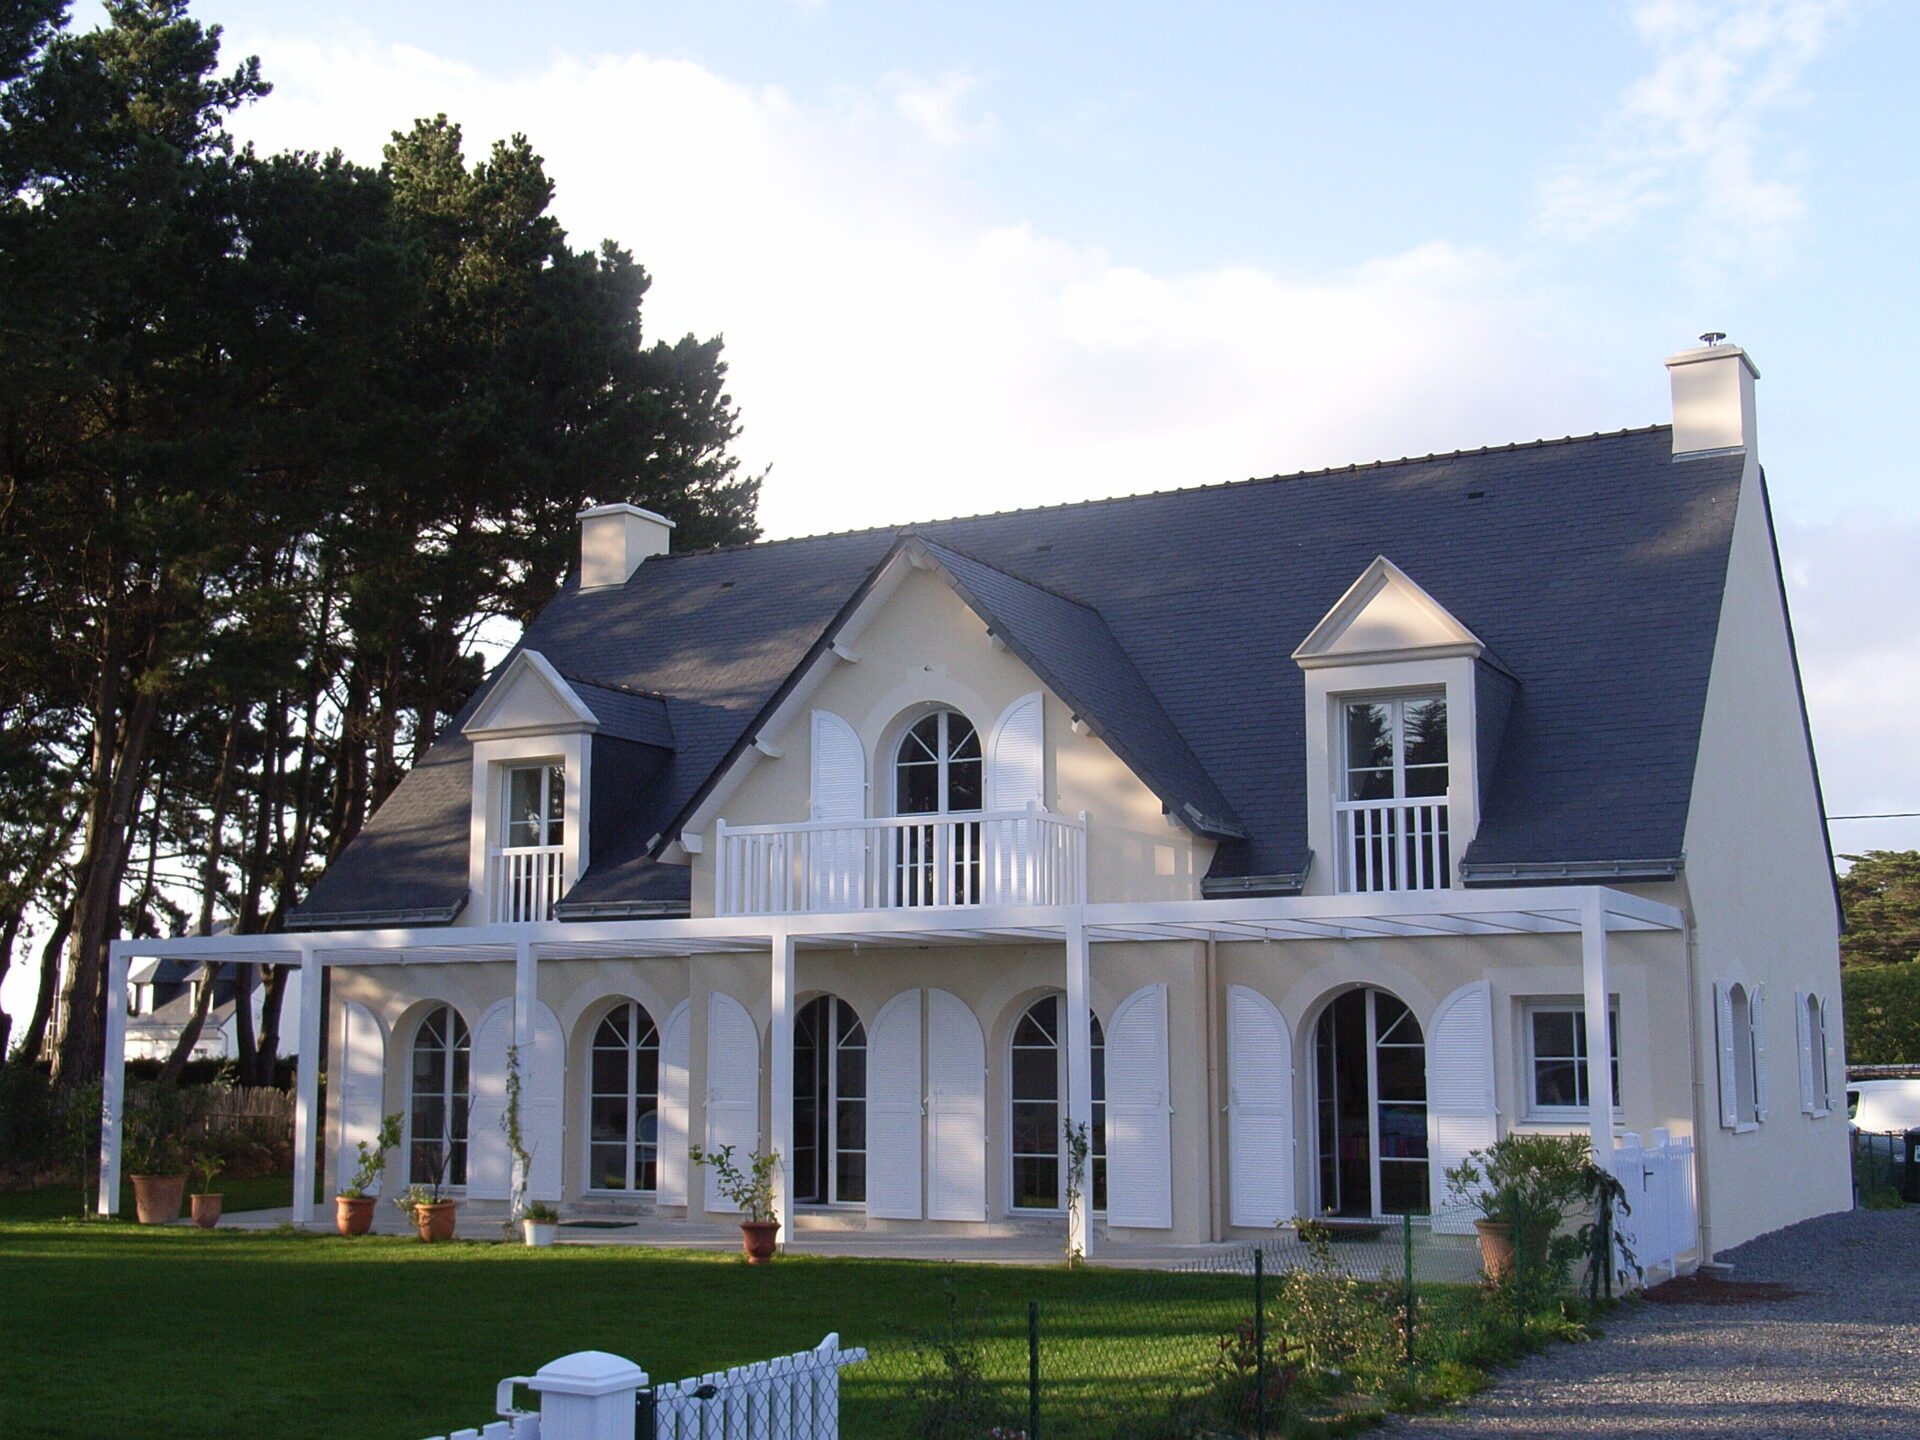 Grande maison avec toiture en ardoise et fenêtres avec grands volets en bois blanc